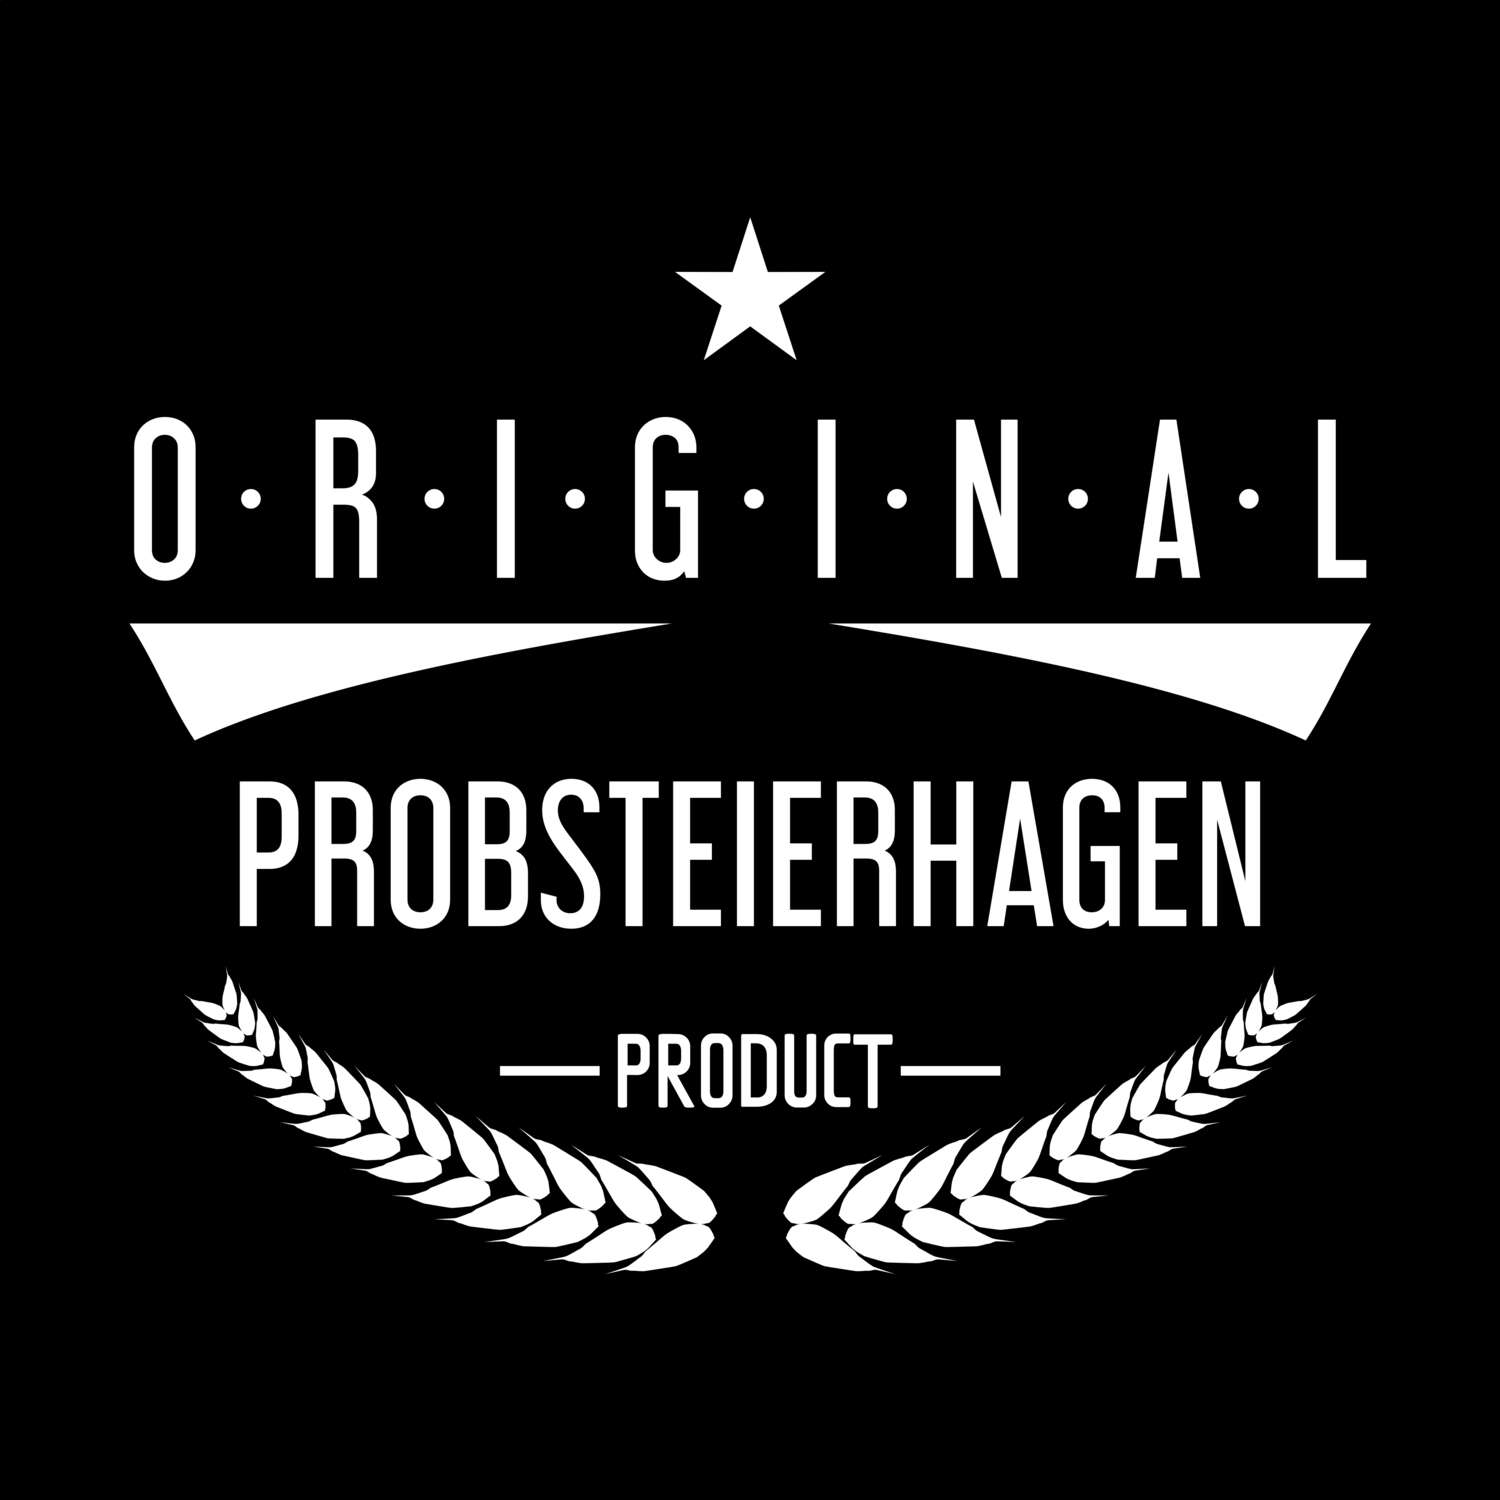 Probsteierhagen T-Shirt »Original Product«